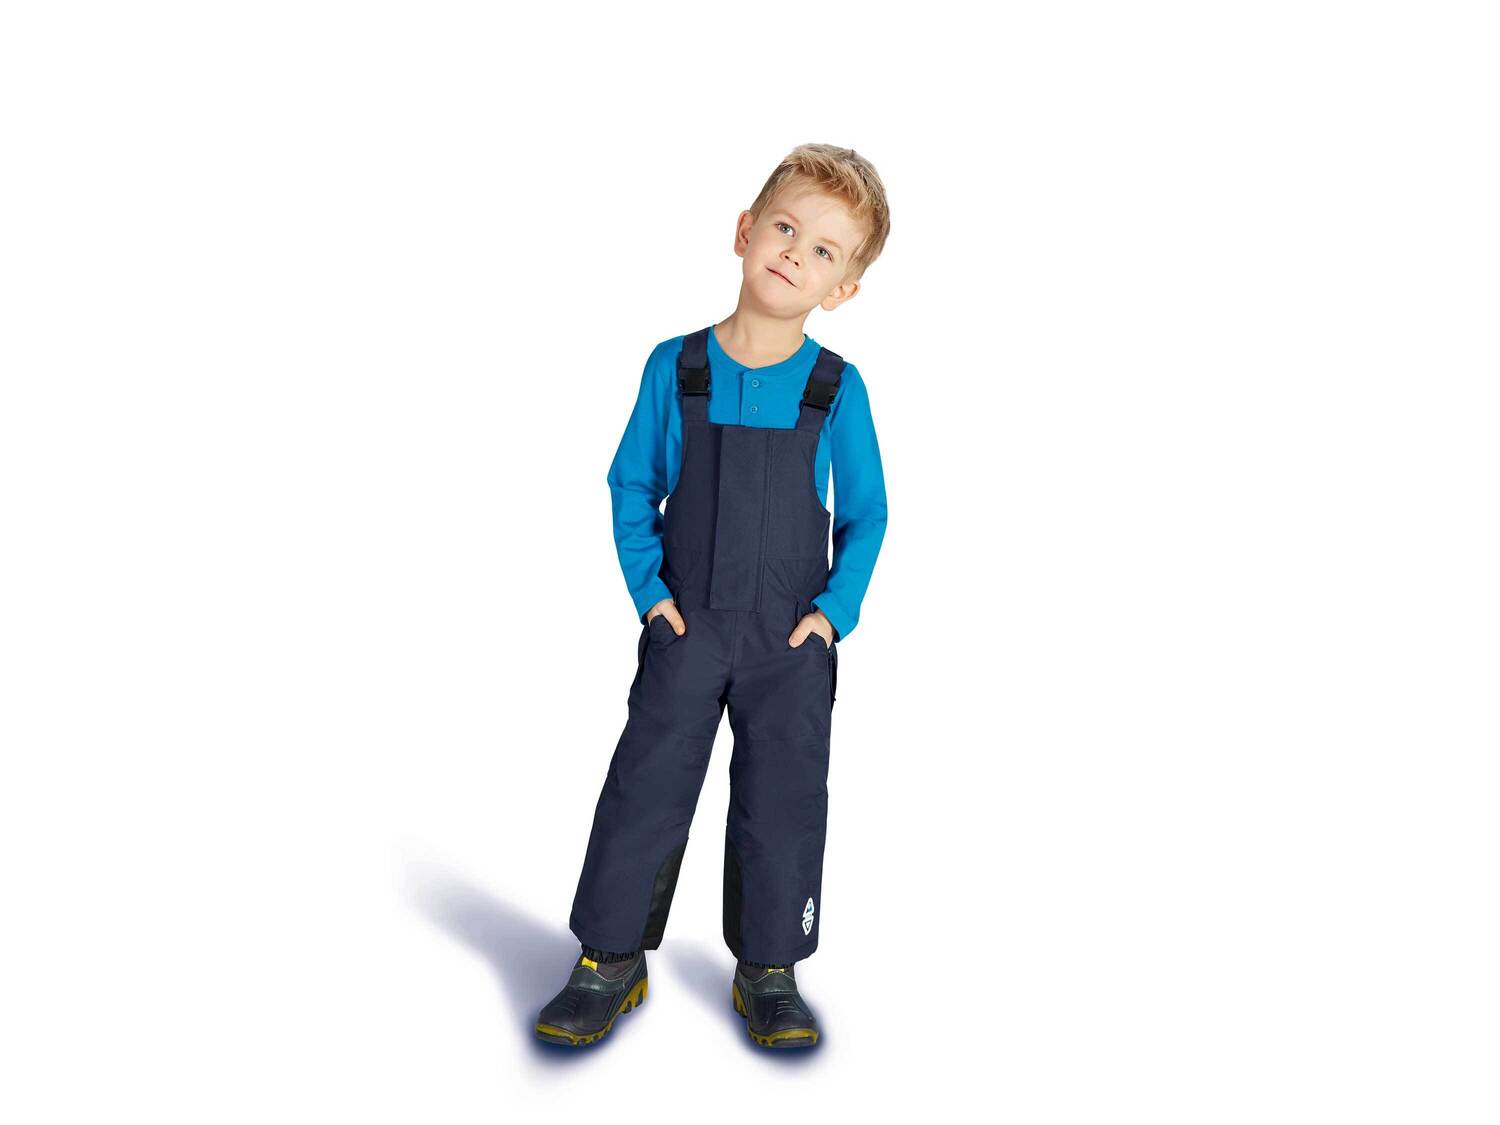 Funkcyjne dziecięce spodnie zimowe , cena 55,00 PLN 
- rozmiary: 86-116
- odpinane, ...